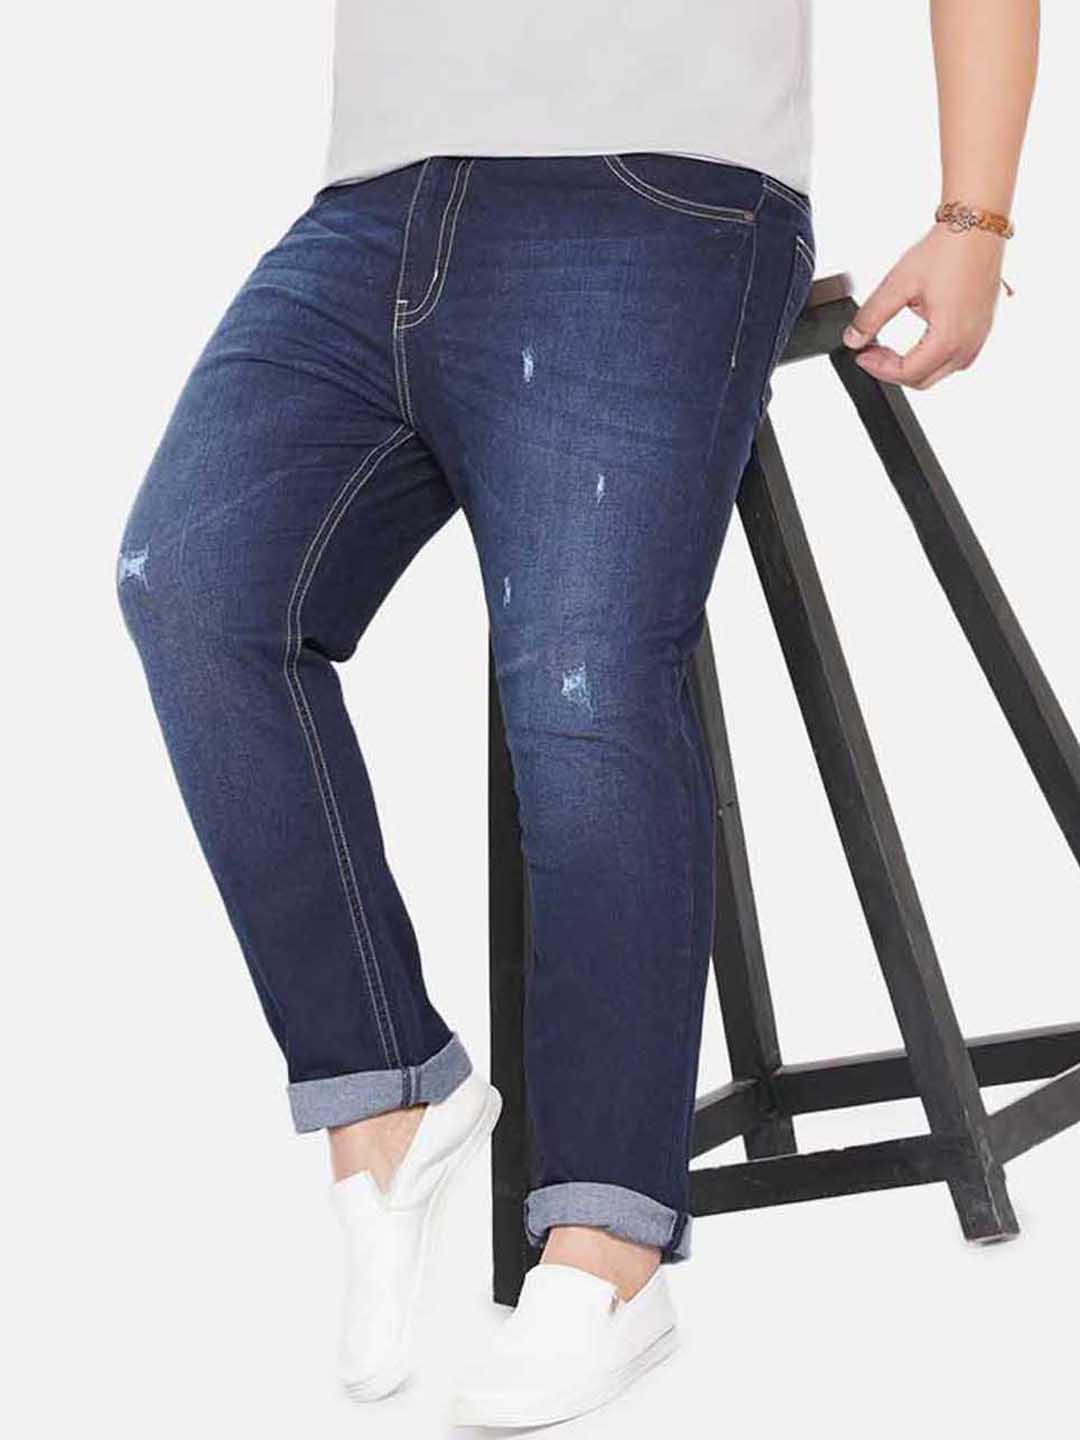 bottomwear/jeans/JPJ12234/jpj12234-1.jpg